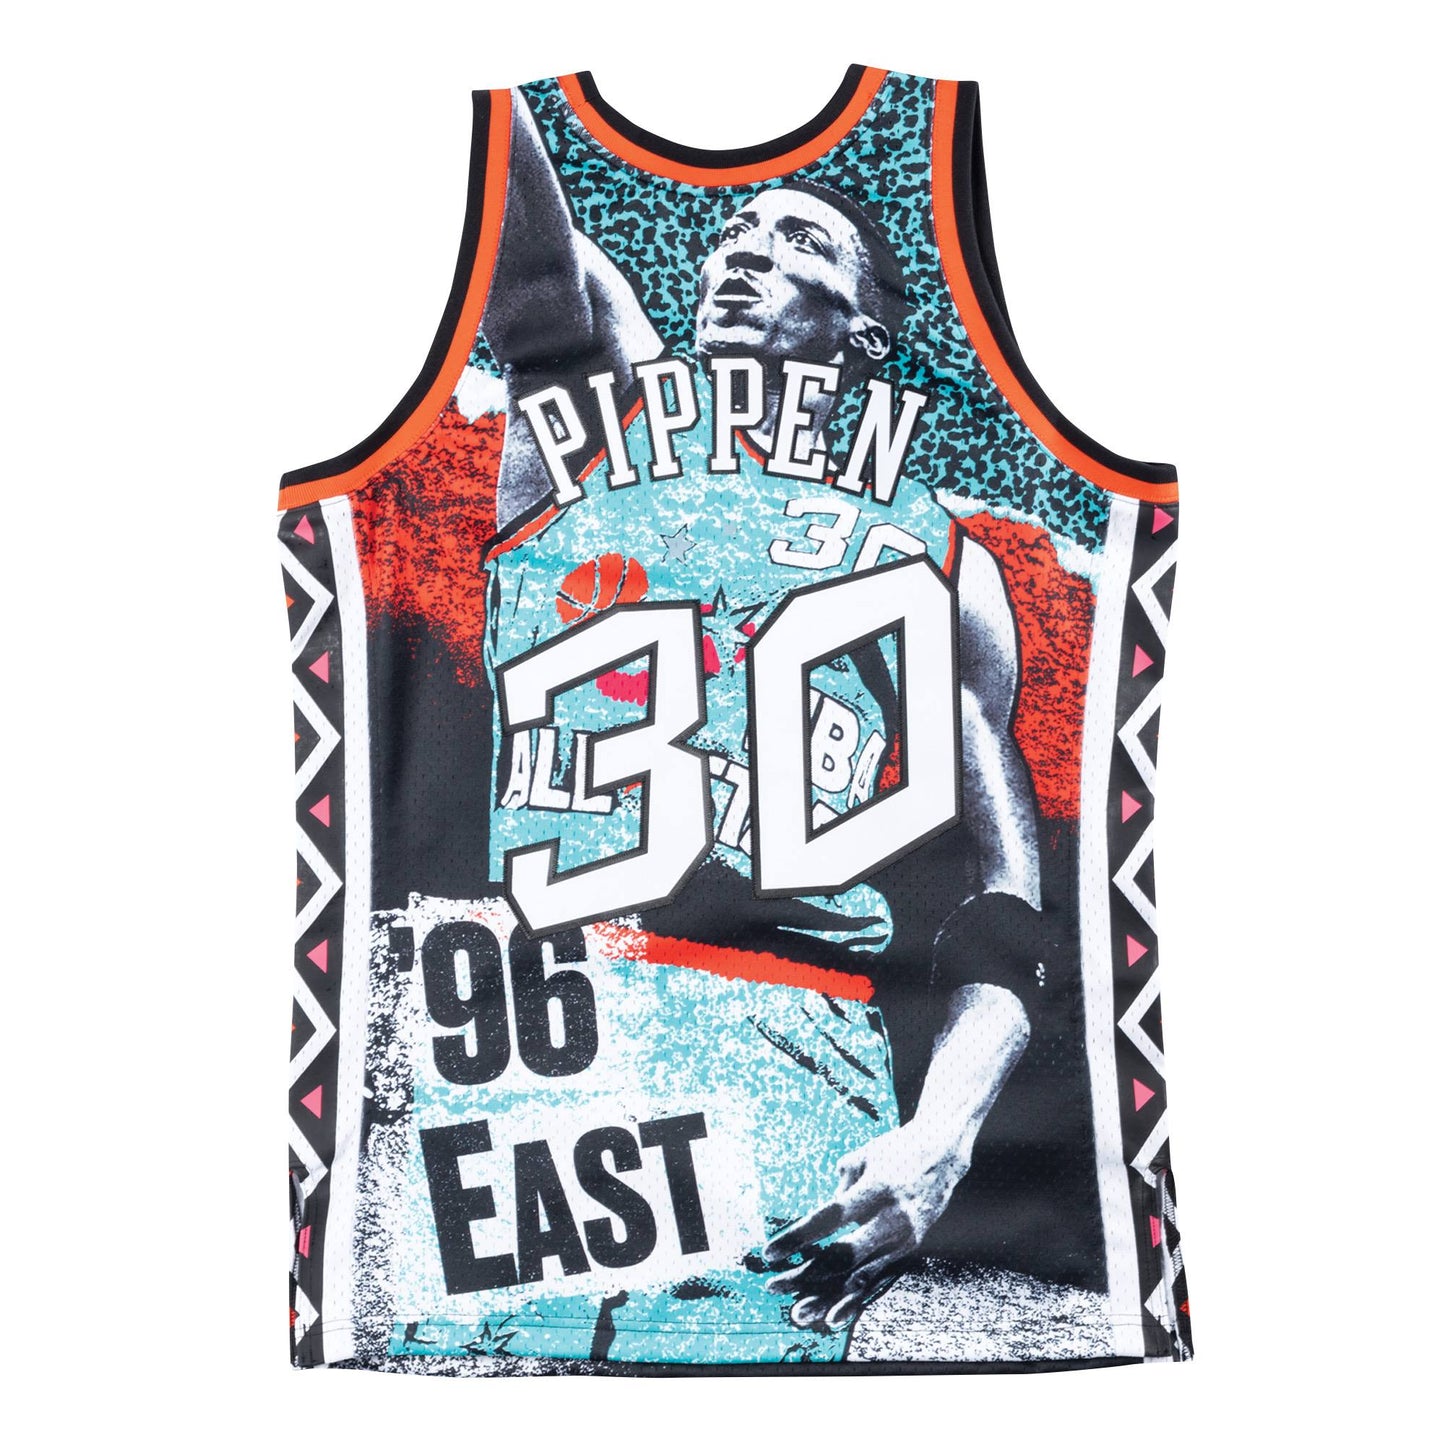 NBA Sublimated Swingman Jersey All Star East 1996 Scottie Pippen